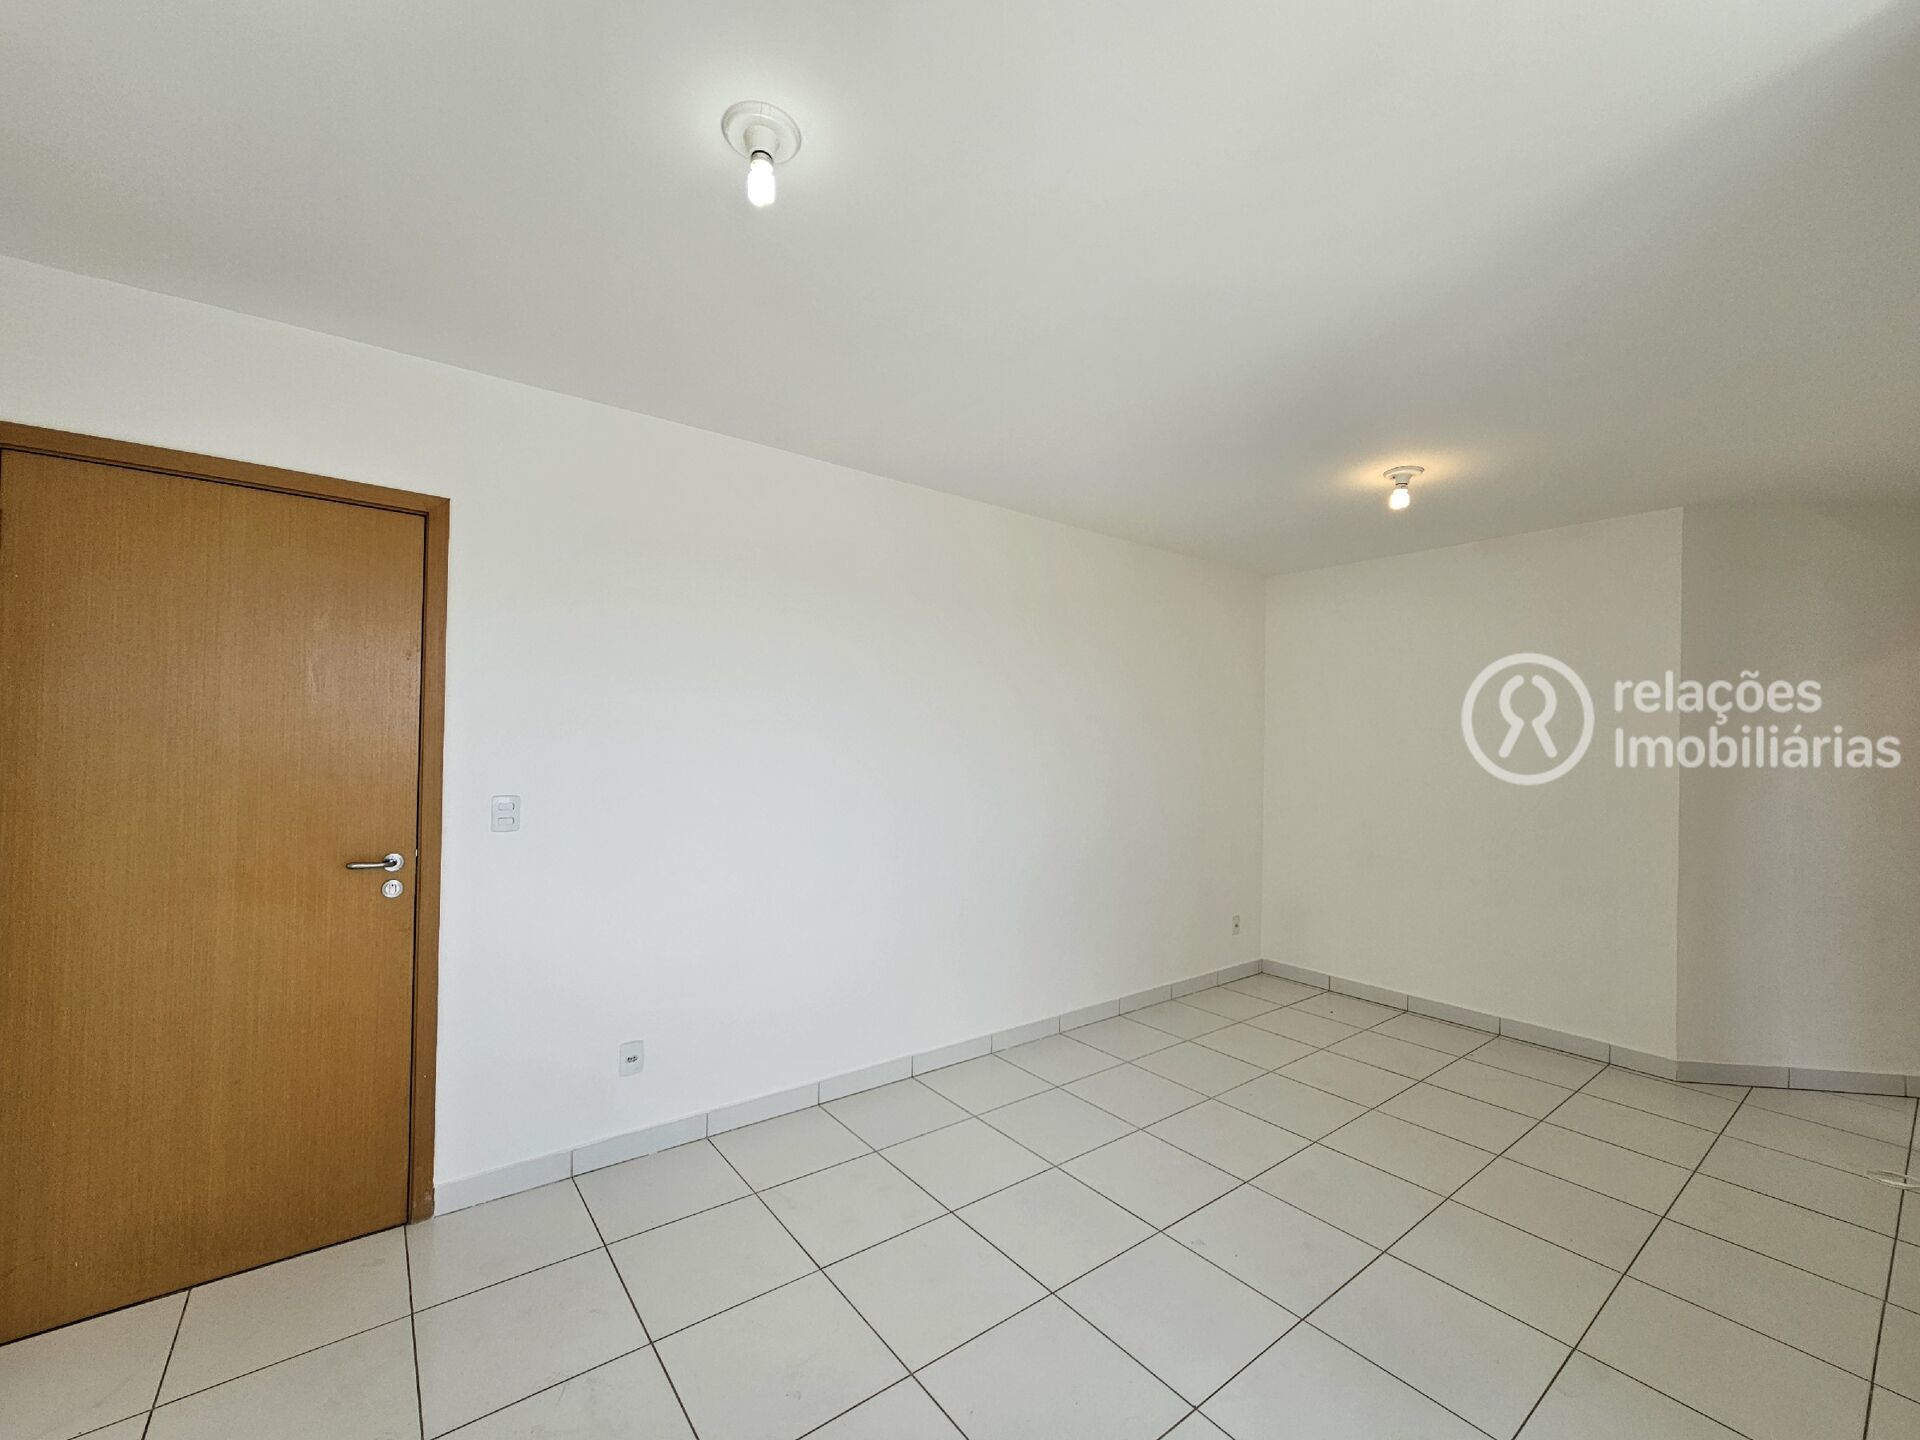 Apartamento, 2 quartos, 55 m² - Foto 3